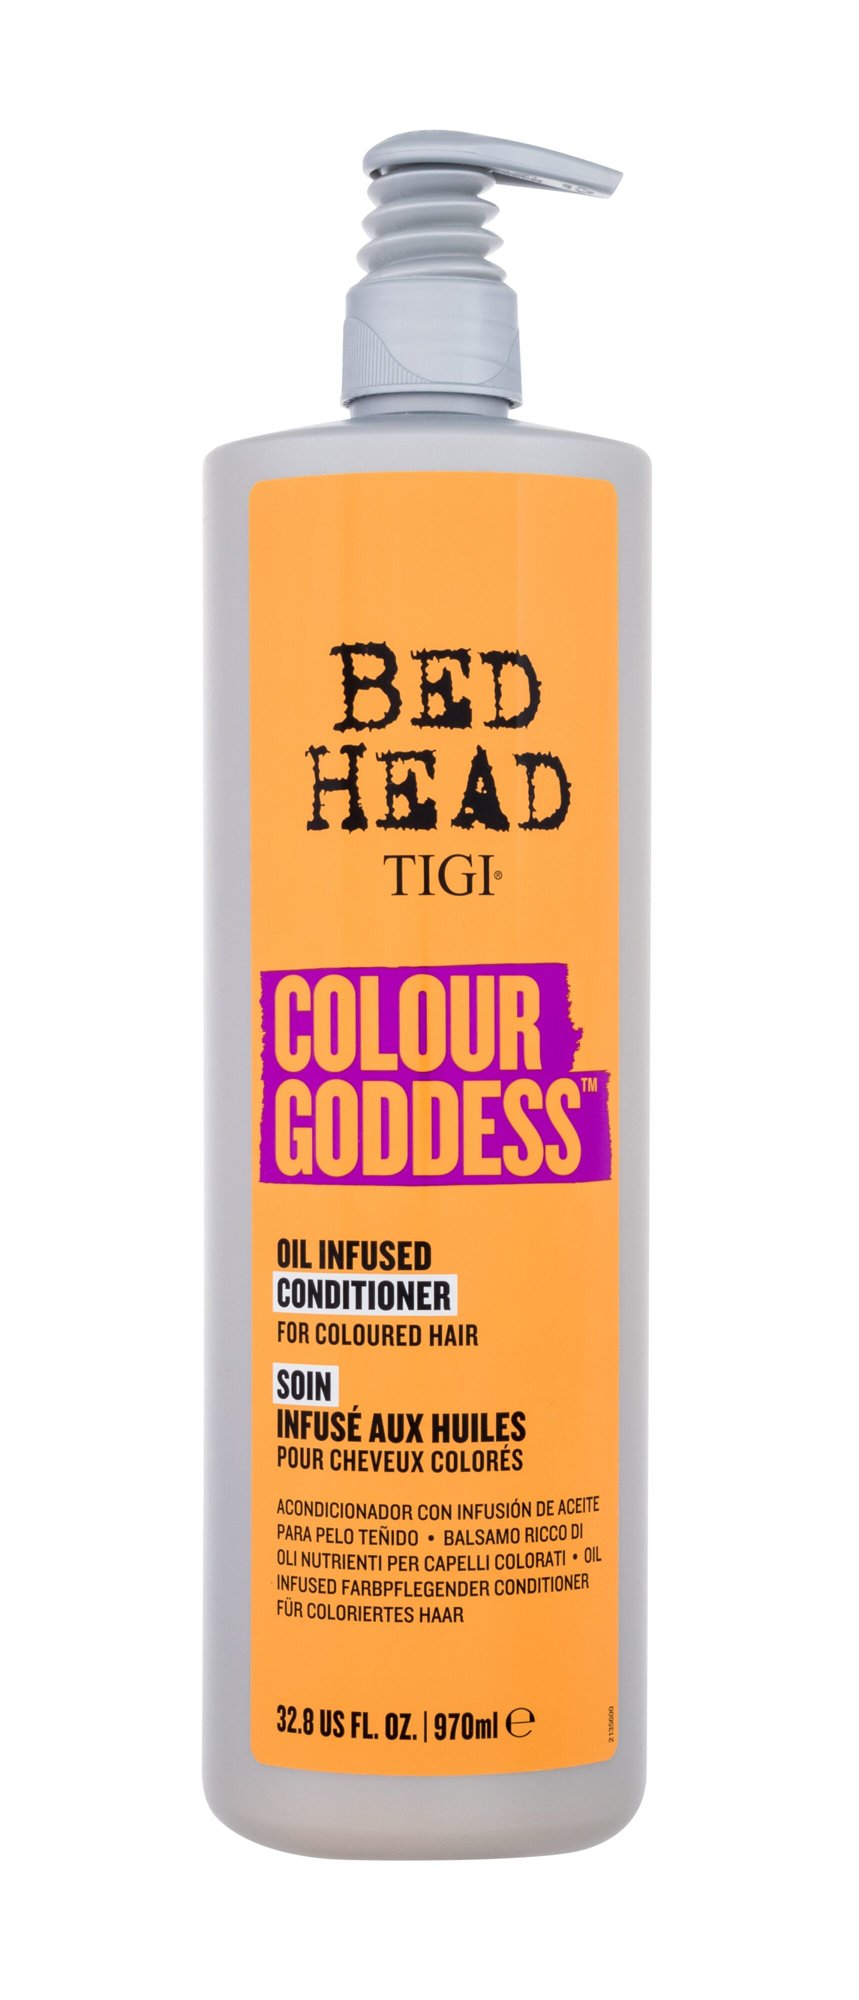 Tigi Bed Head Colour Goddess kondicionierius